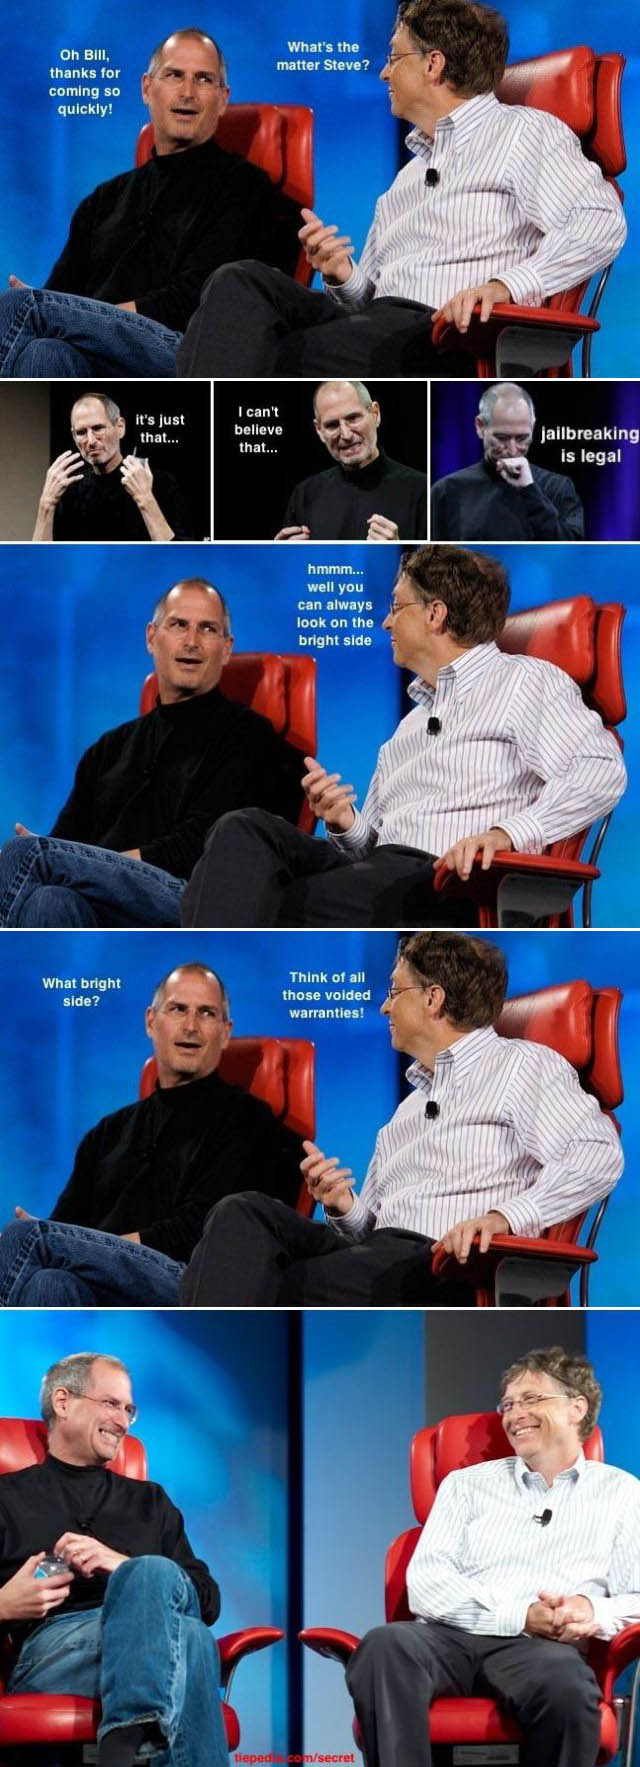 Le jailbreak de l iPhone est legal aux Etats Unis : la reaction de Steve Jobs et Bill Gates :)